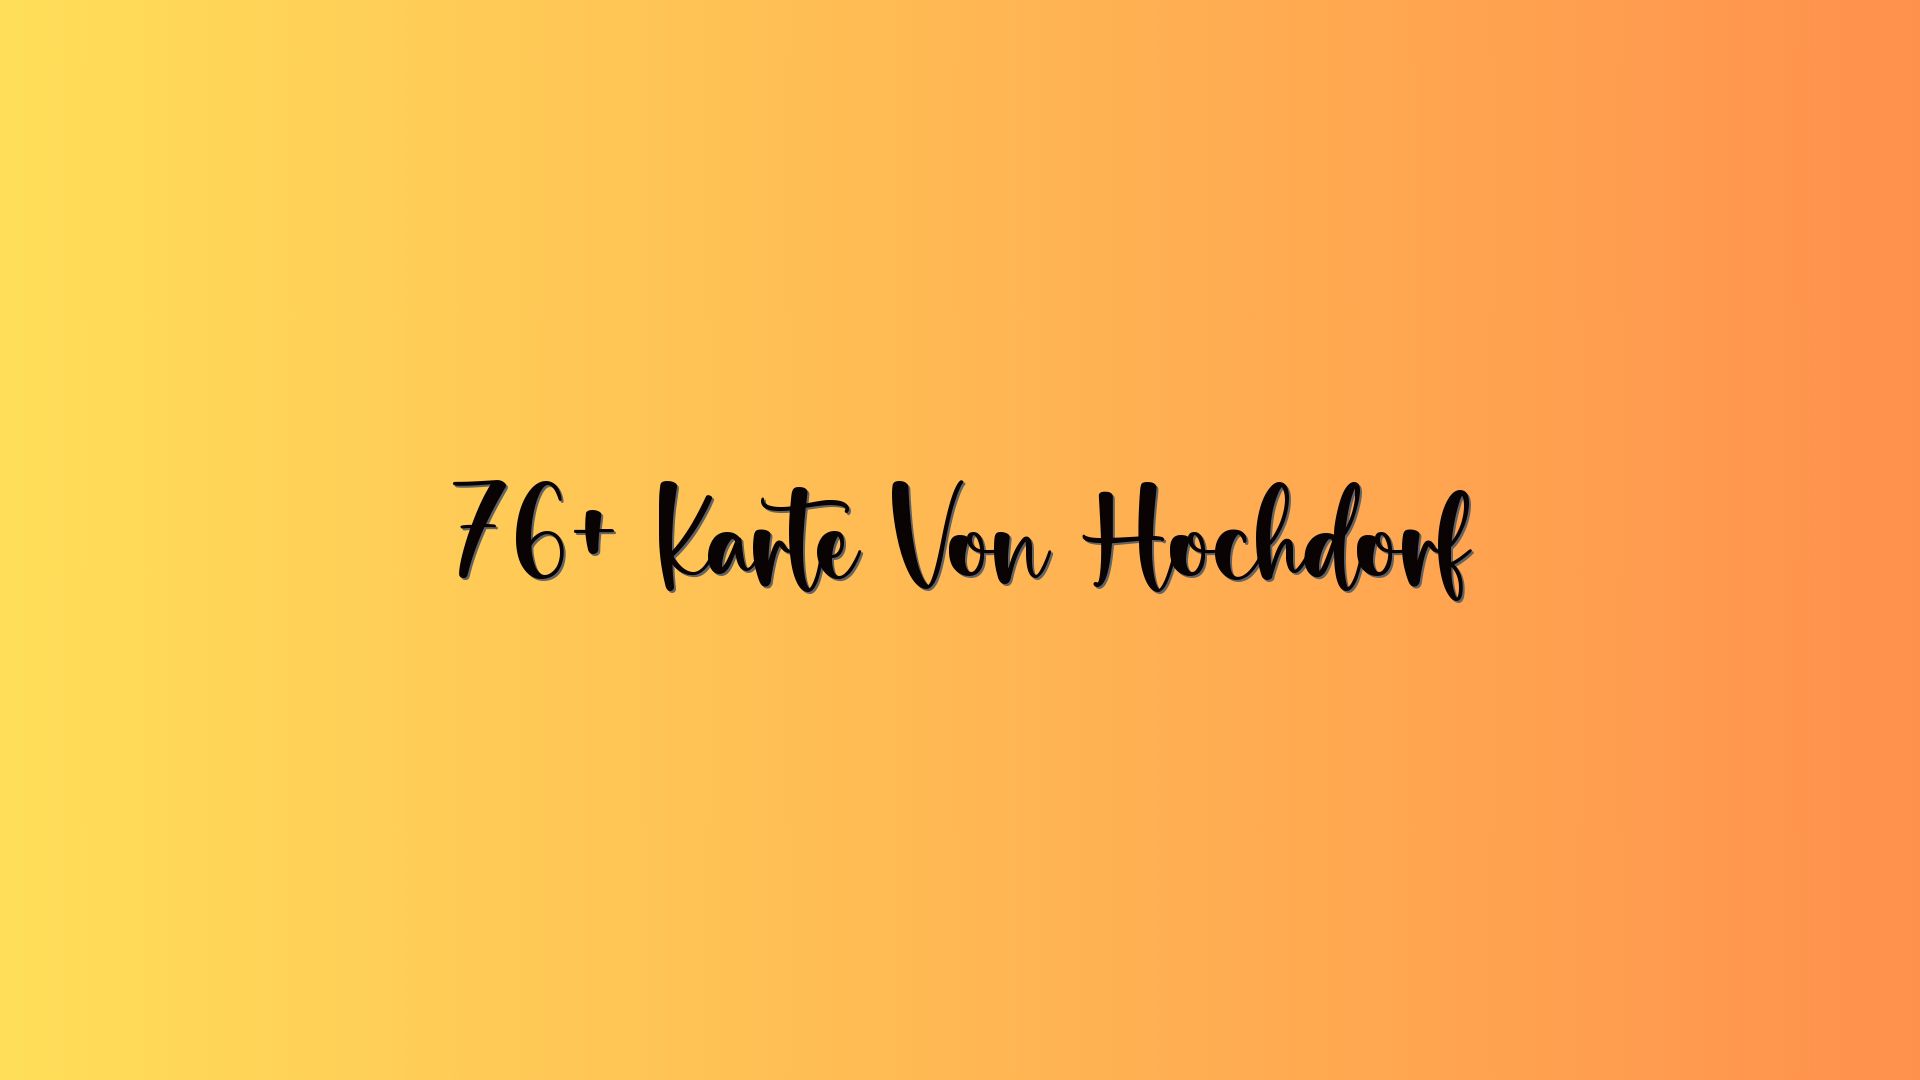 76+ Karte Von Hochdorf